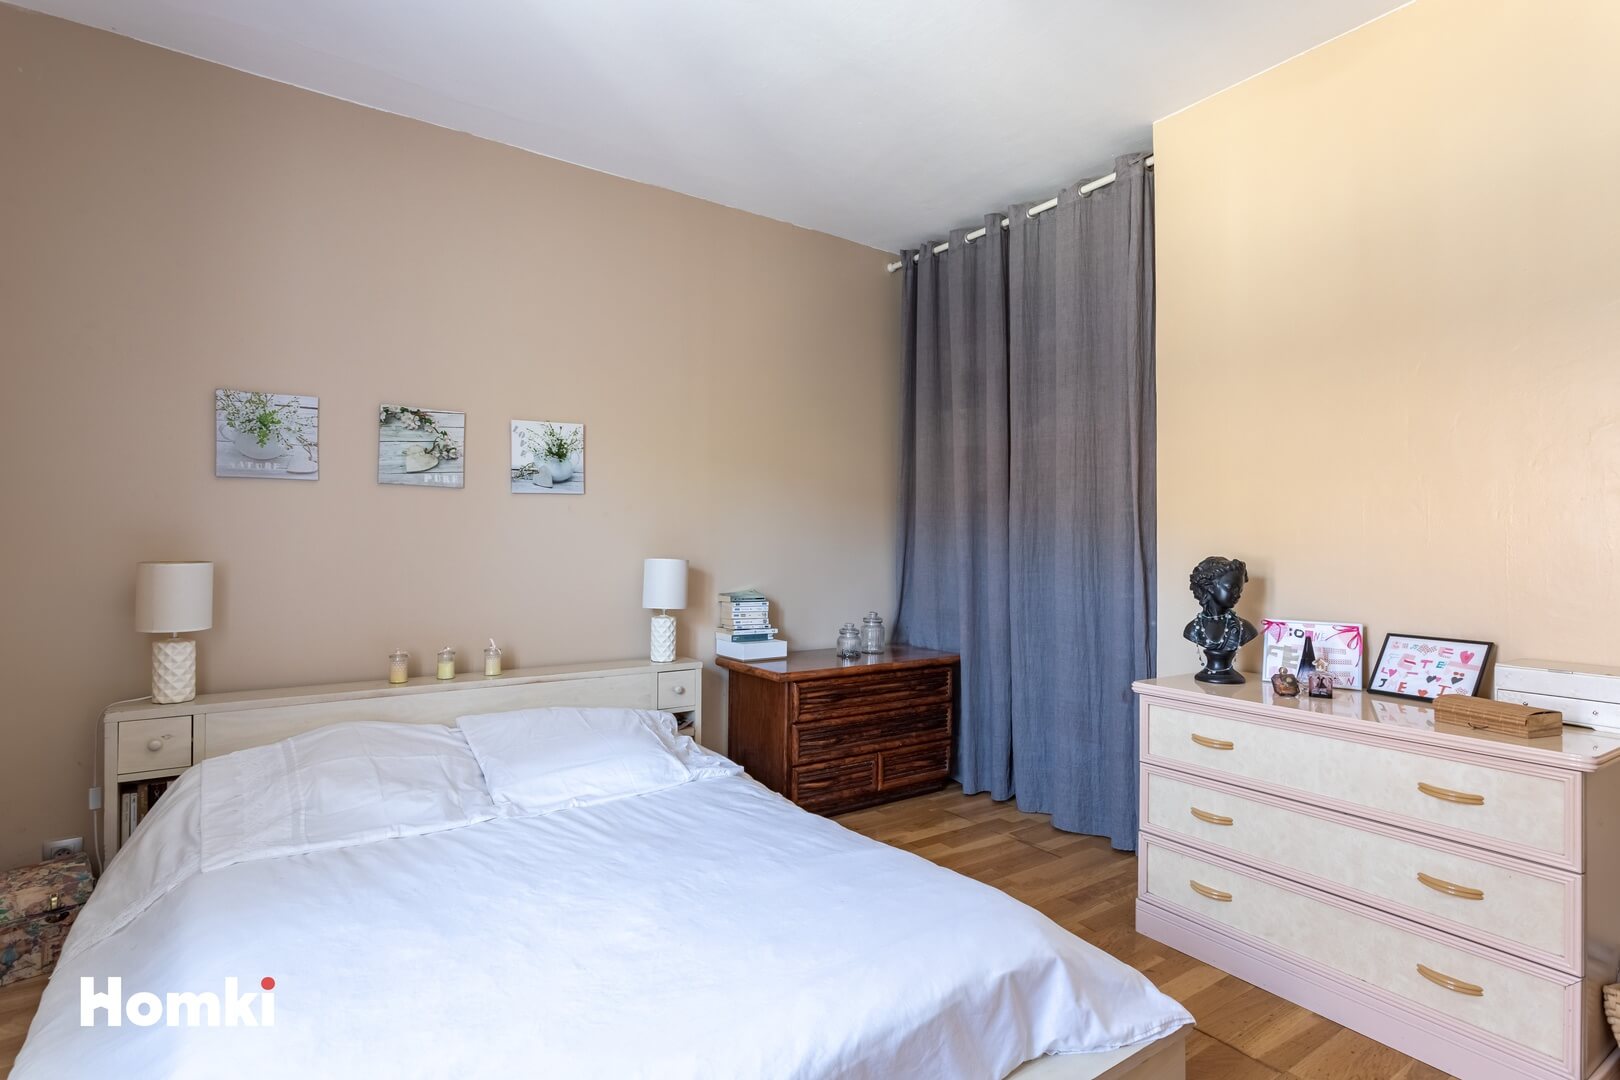 Homki - Vente Appartement  de 86.0 m² à Aix-les-Bains 73100